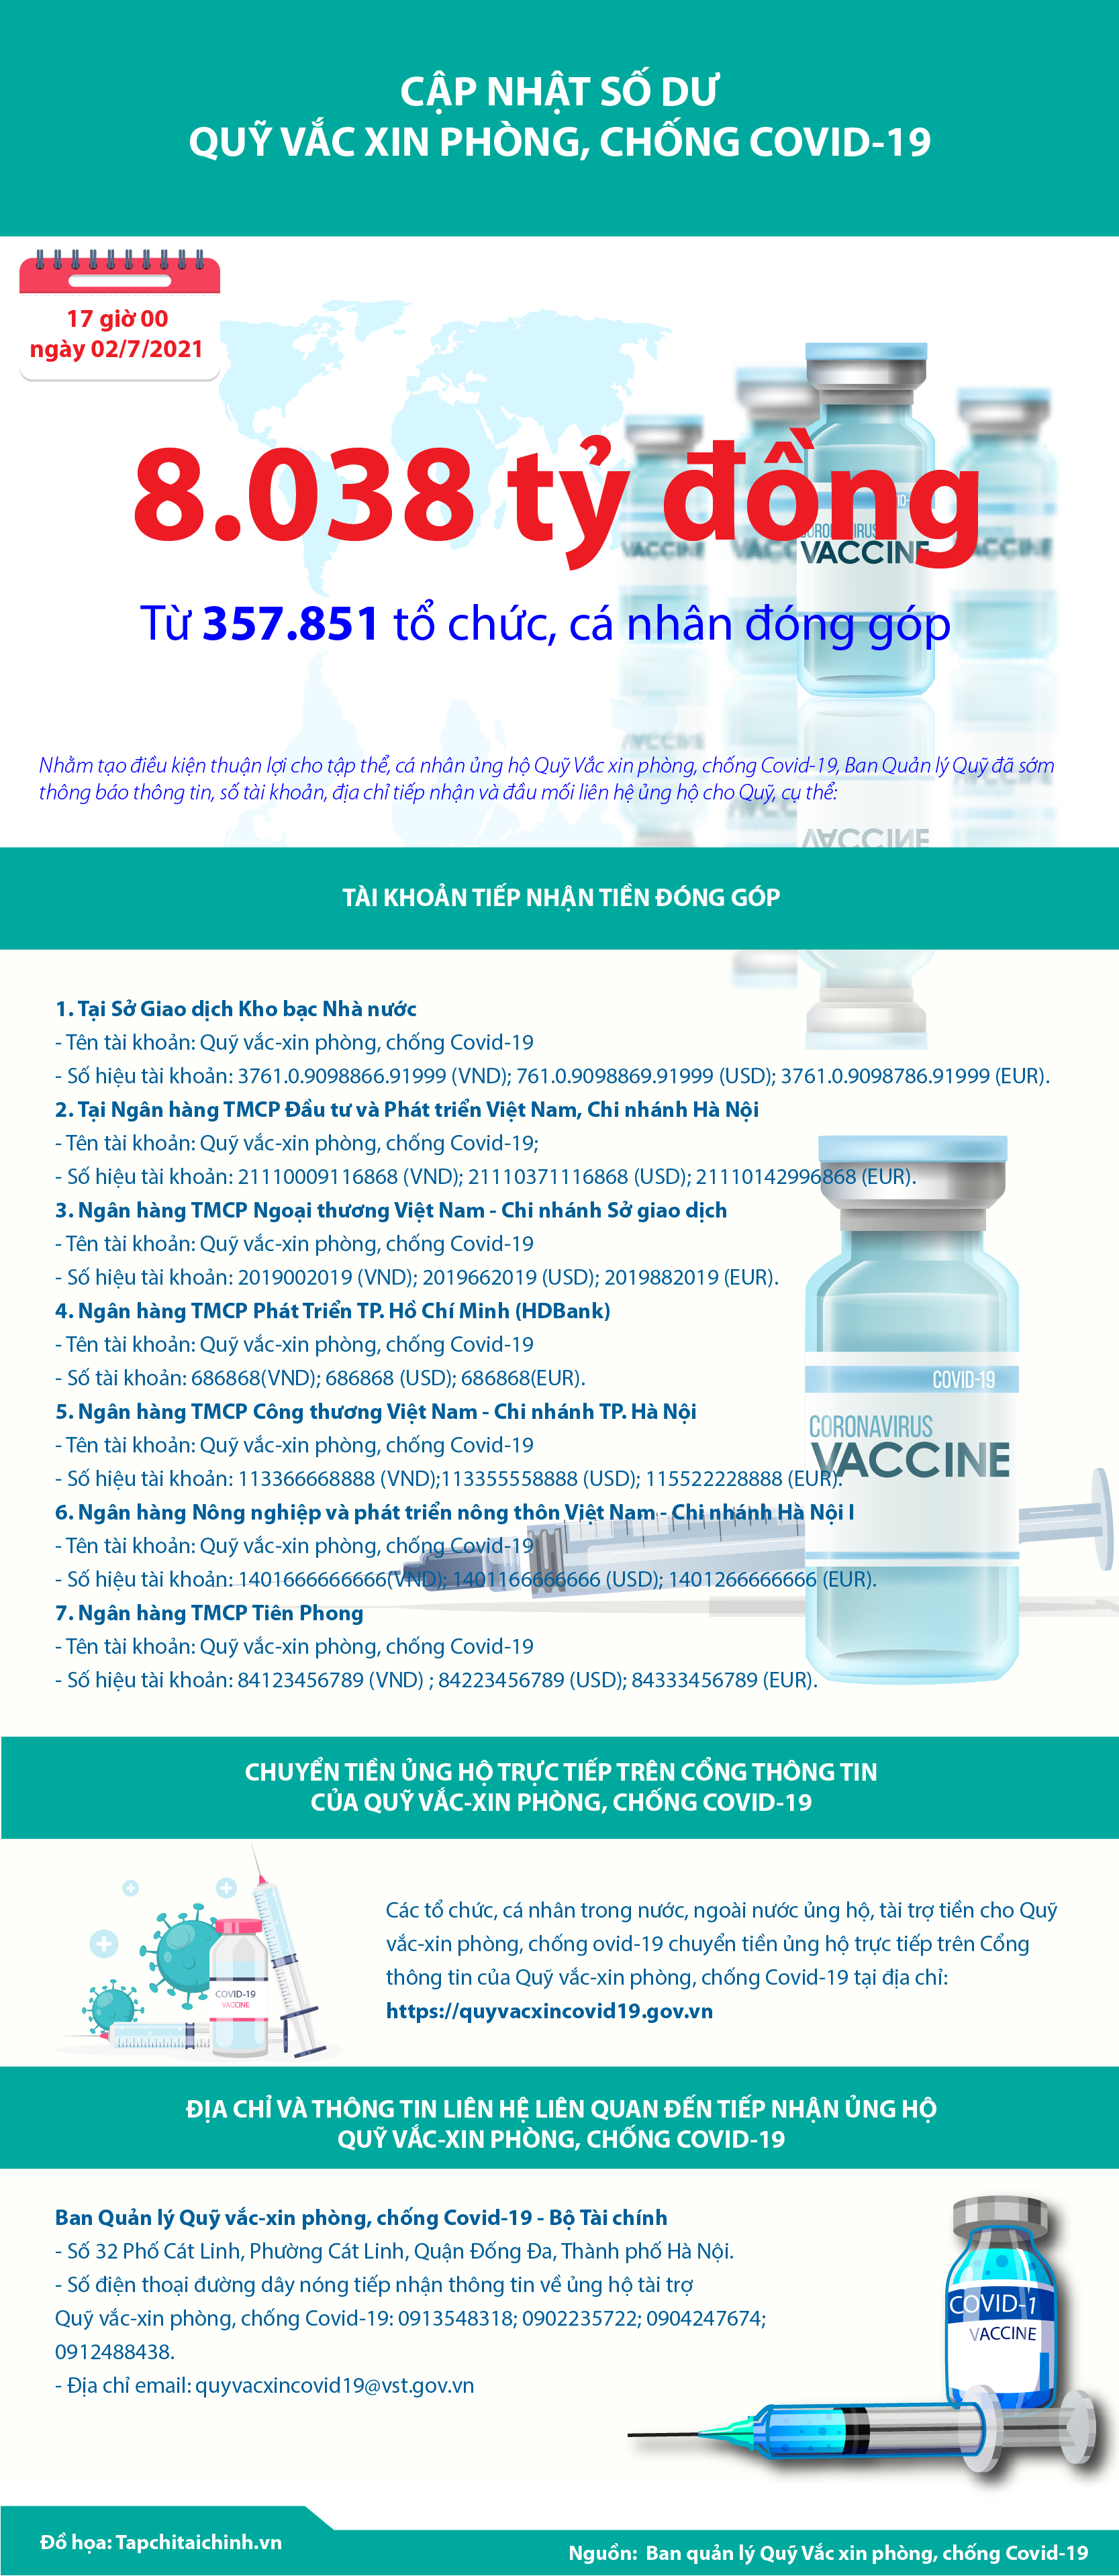 [Infographics] Quỹ Vắc xin phòng, chống Covid-19 đã tiếp nhận ủng hộ 8.038 tỷ đồng - Ảnh 1